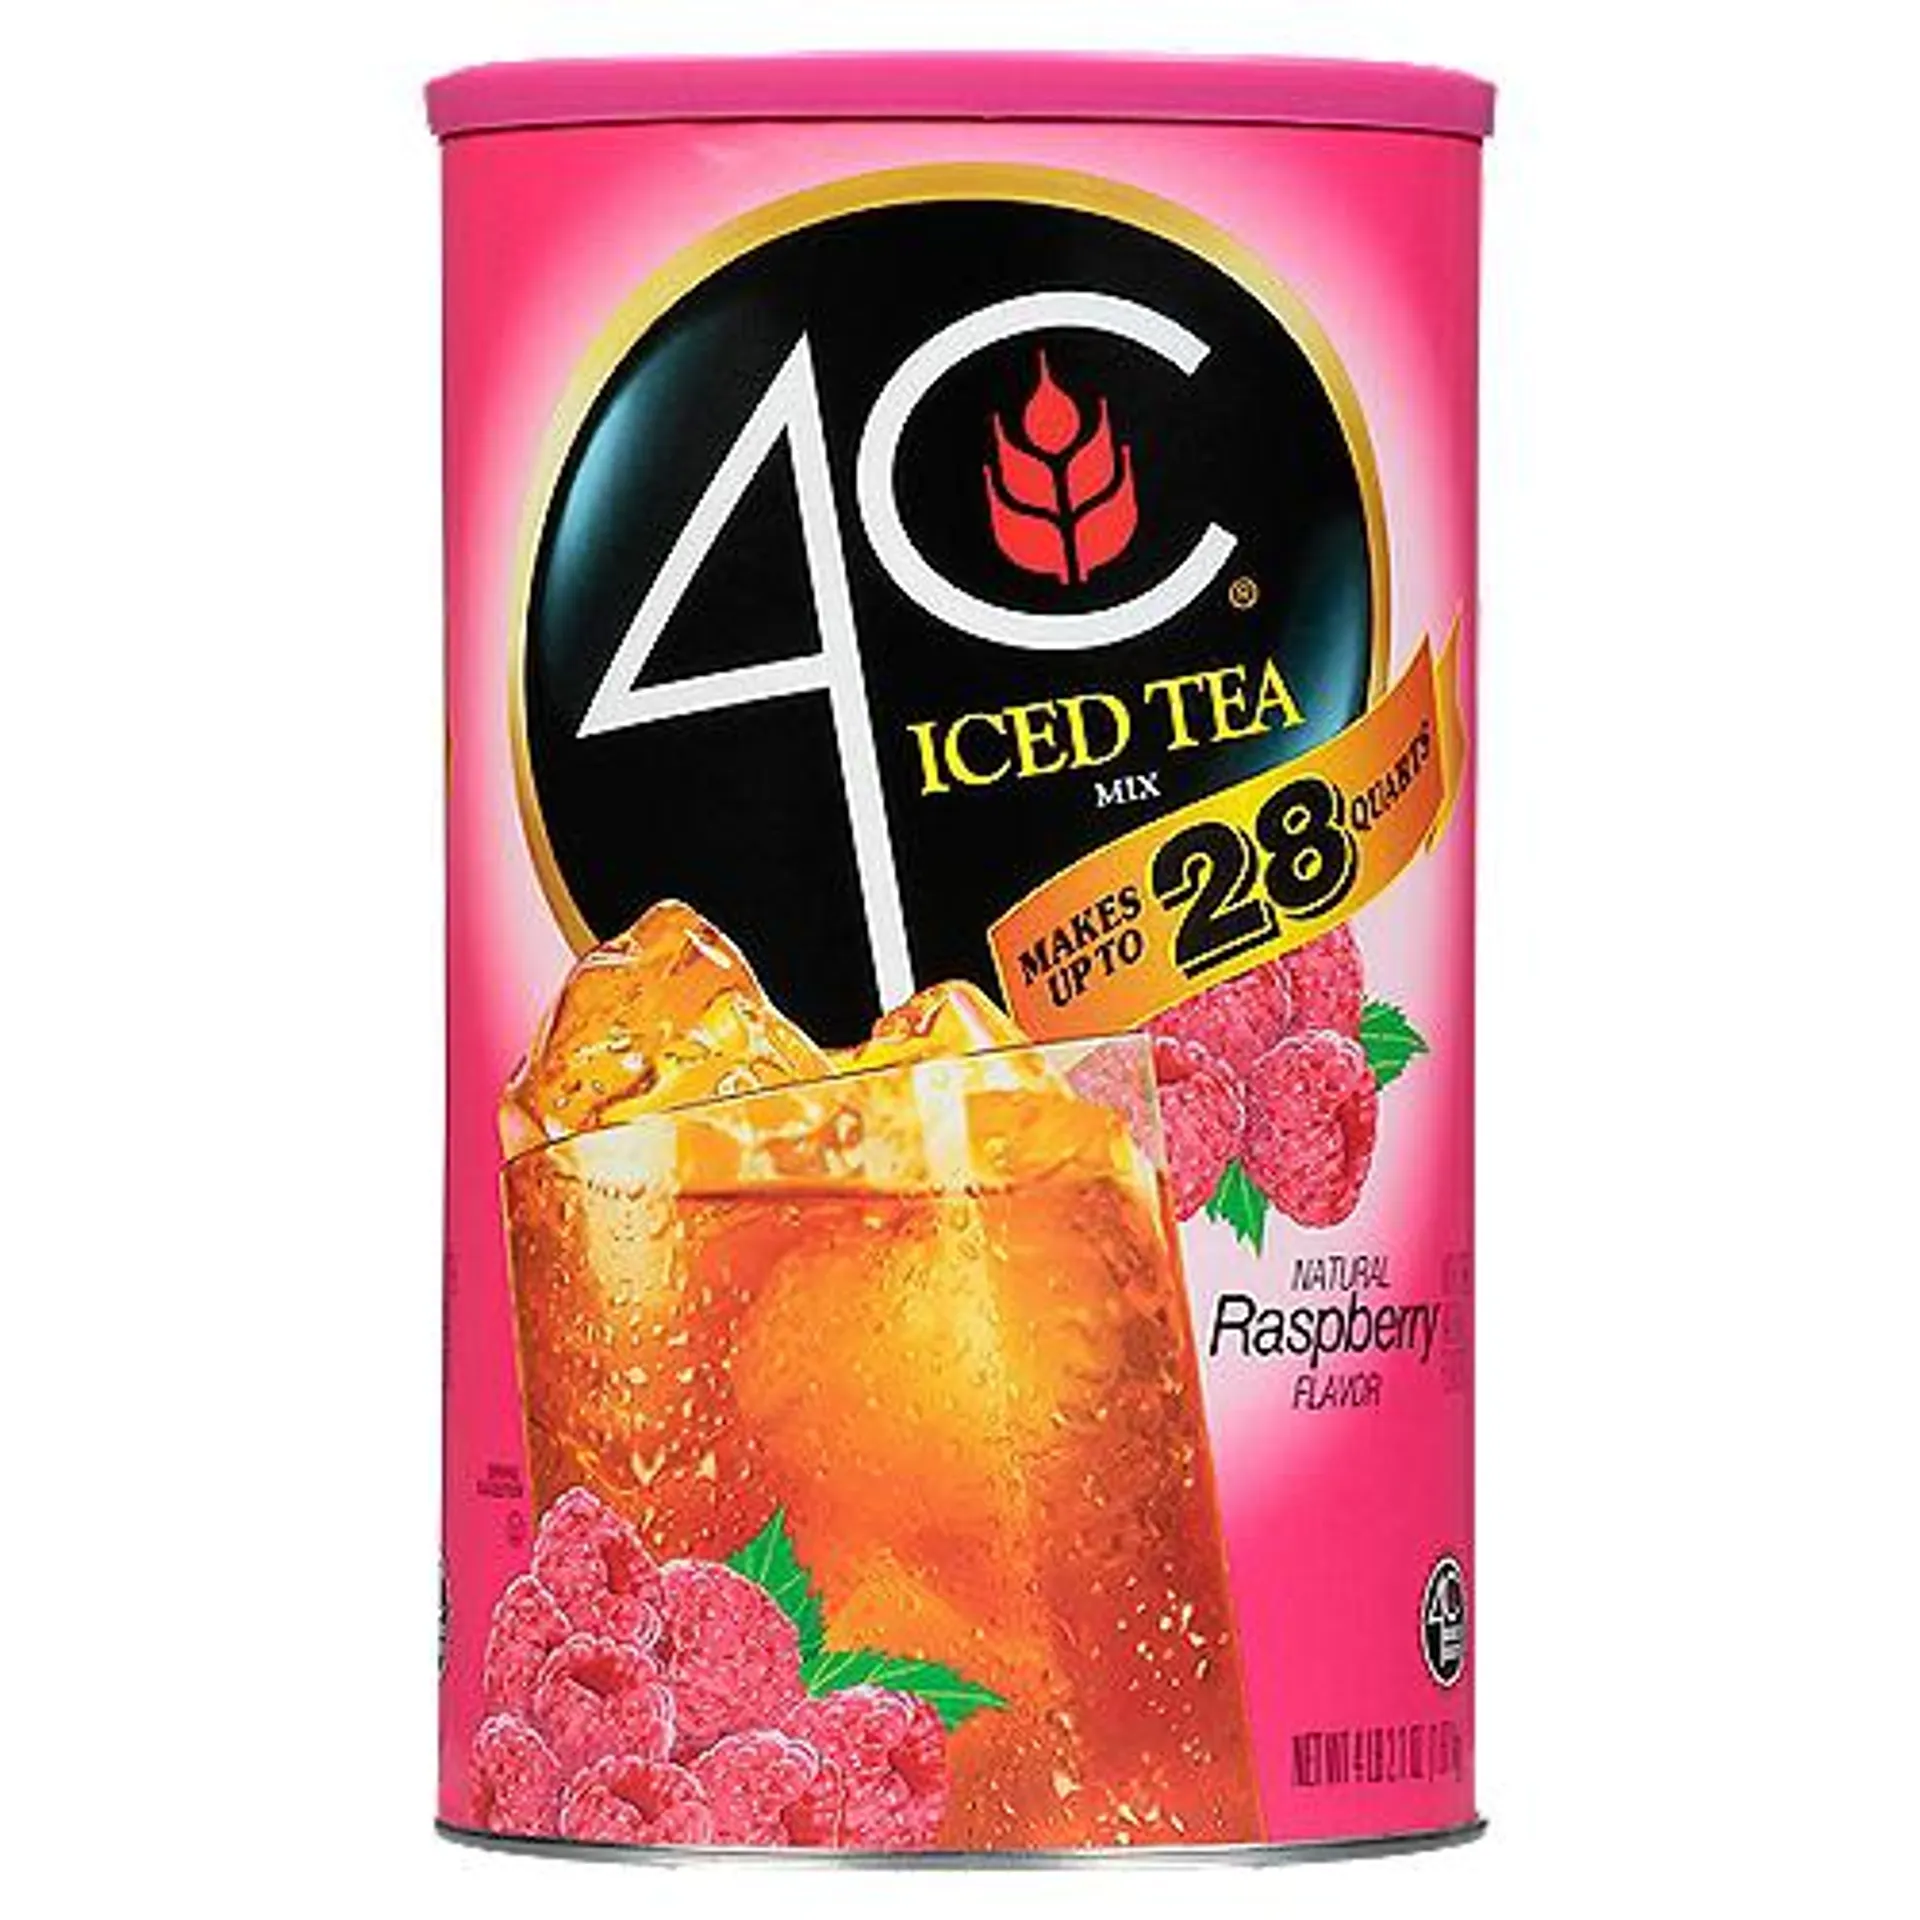 4C Natural Raspberry Flavor, Iced Tea Mix, 70.3 Ounce